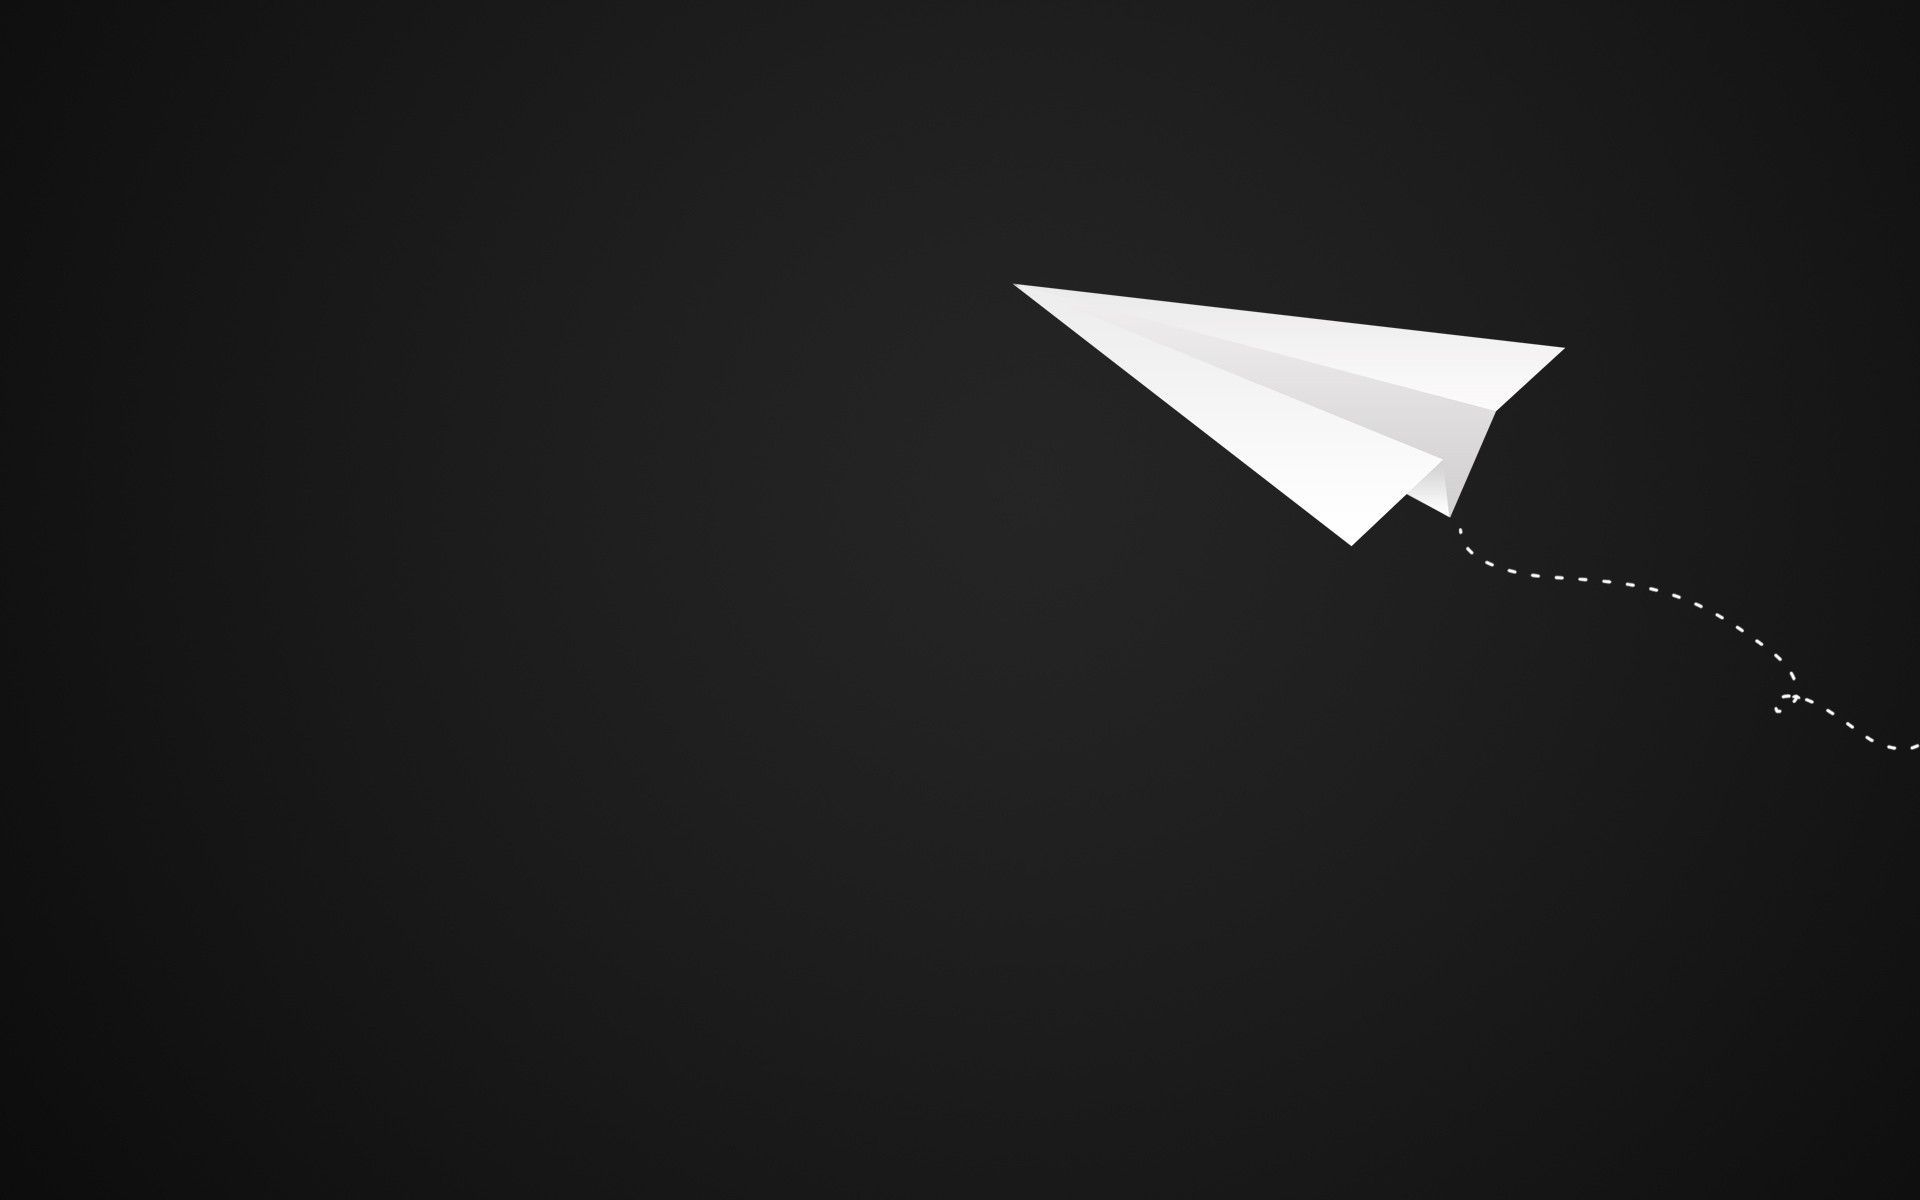 بک گراند گوگولی هواپیمای کاغذی سفید روی زمینه مشکی برای لپتاپ